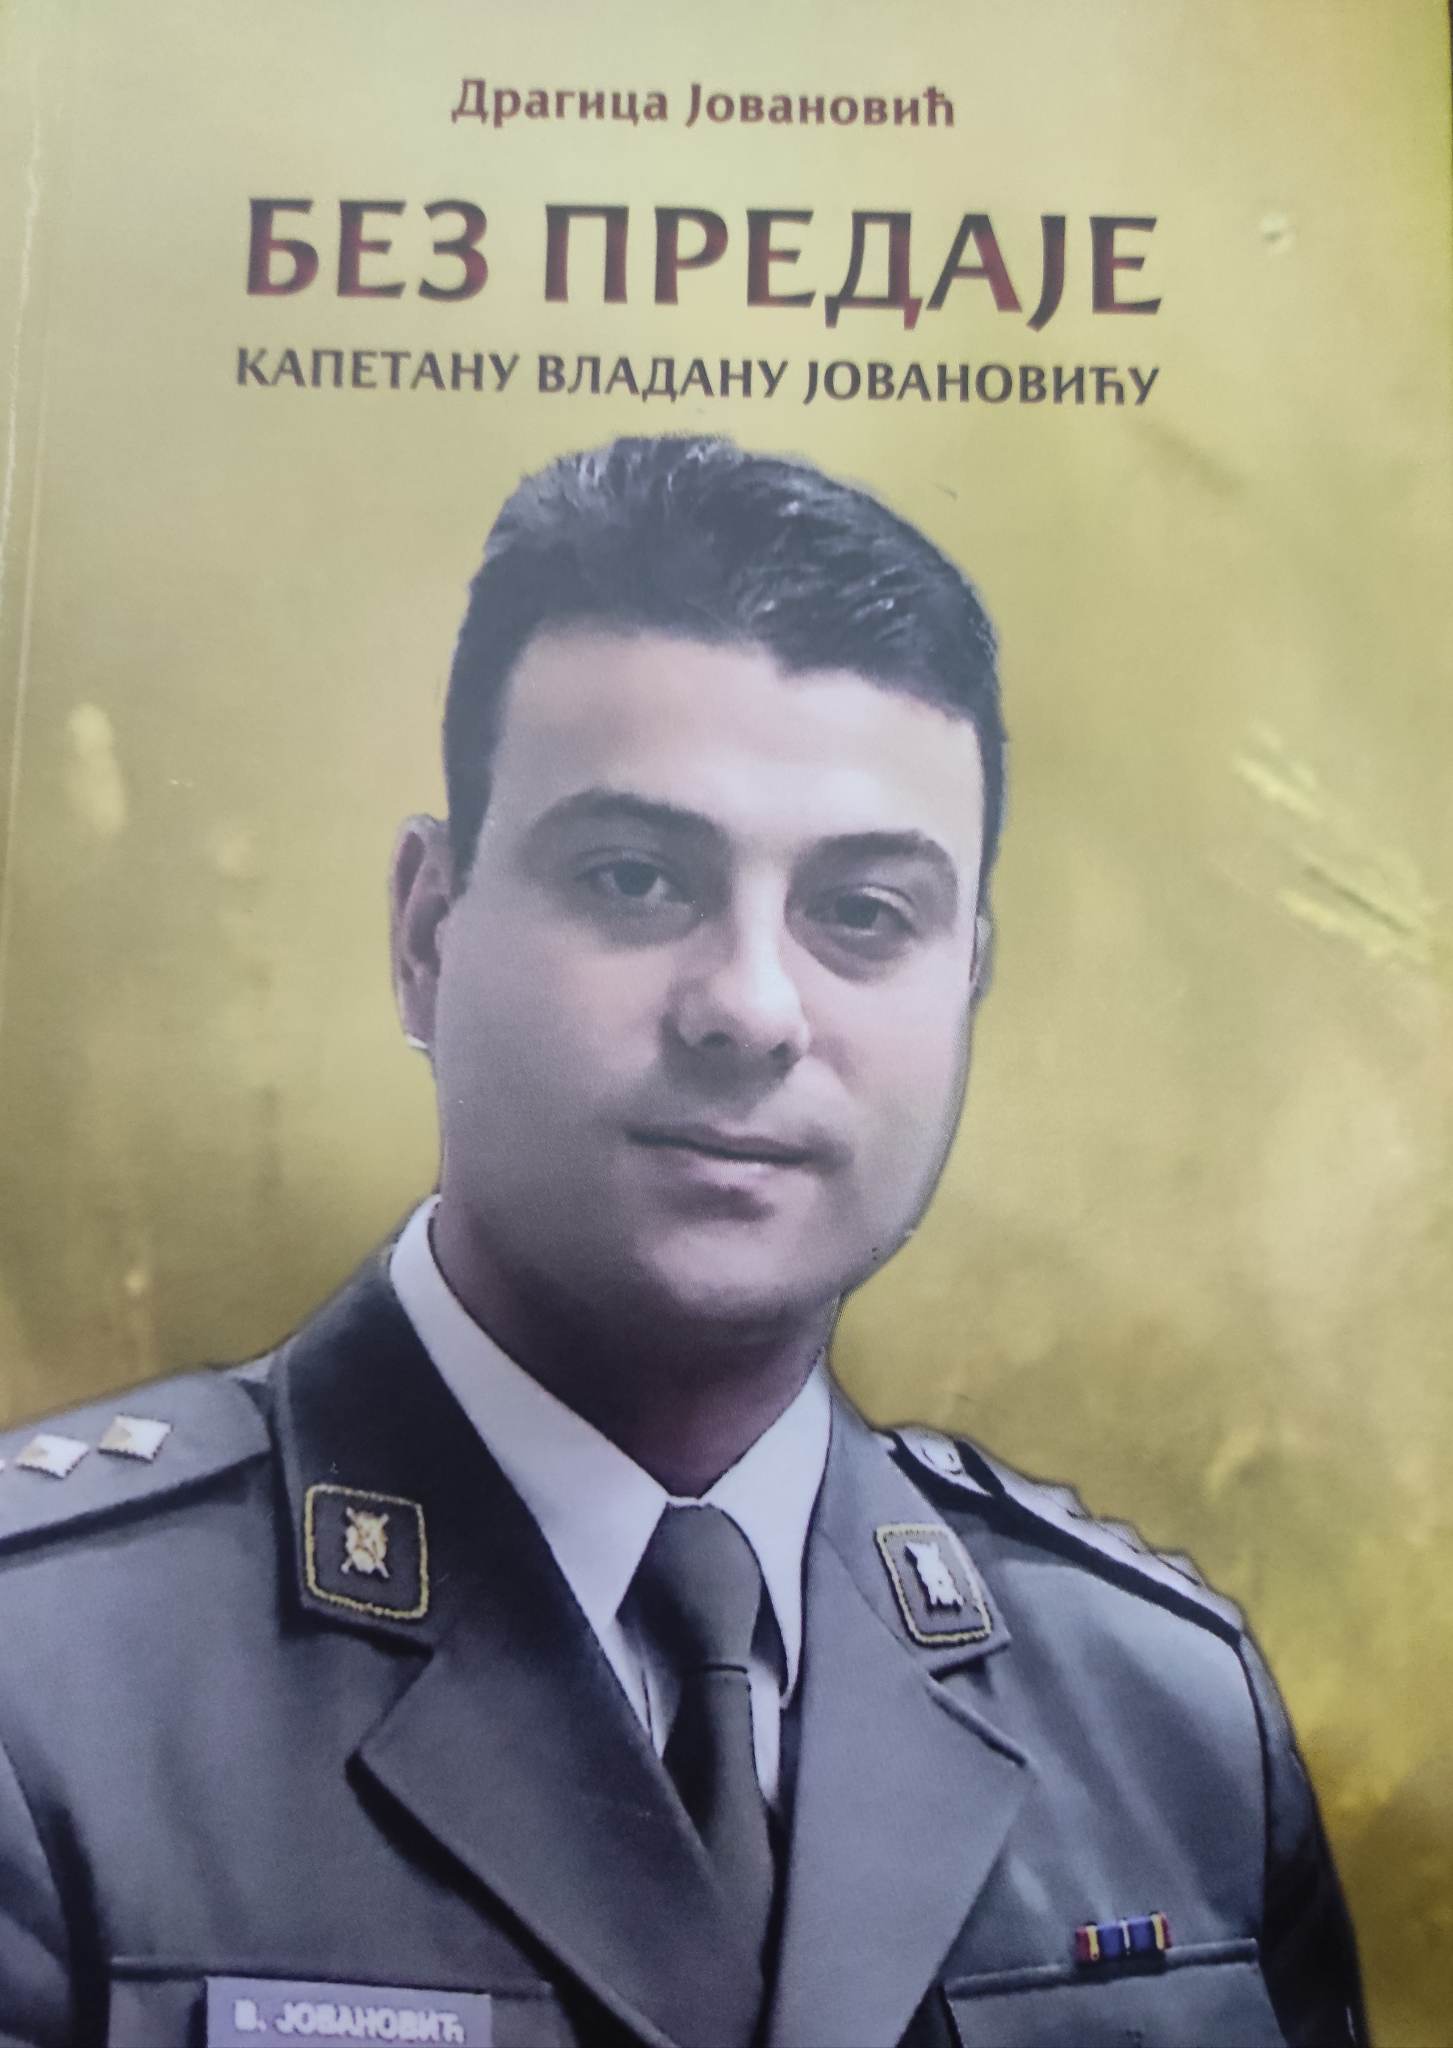 “Без предаје” – књига посвећена сећању на капетана Владана Јовановића